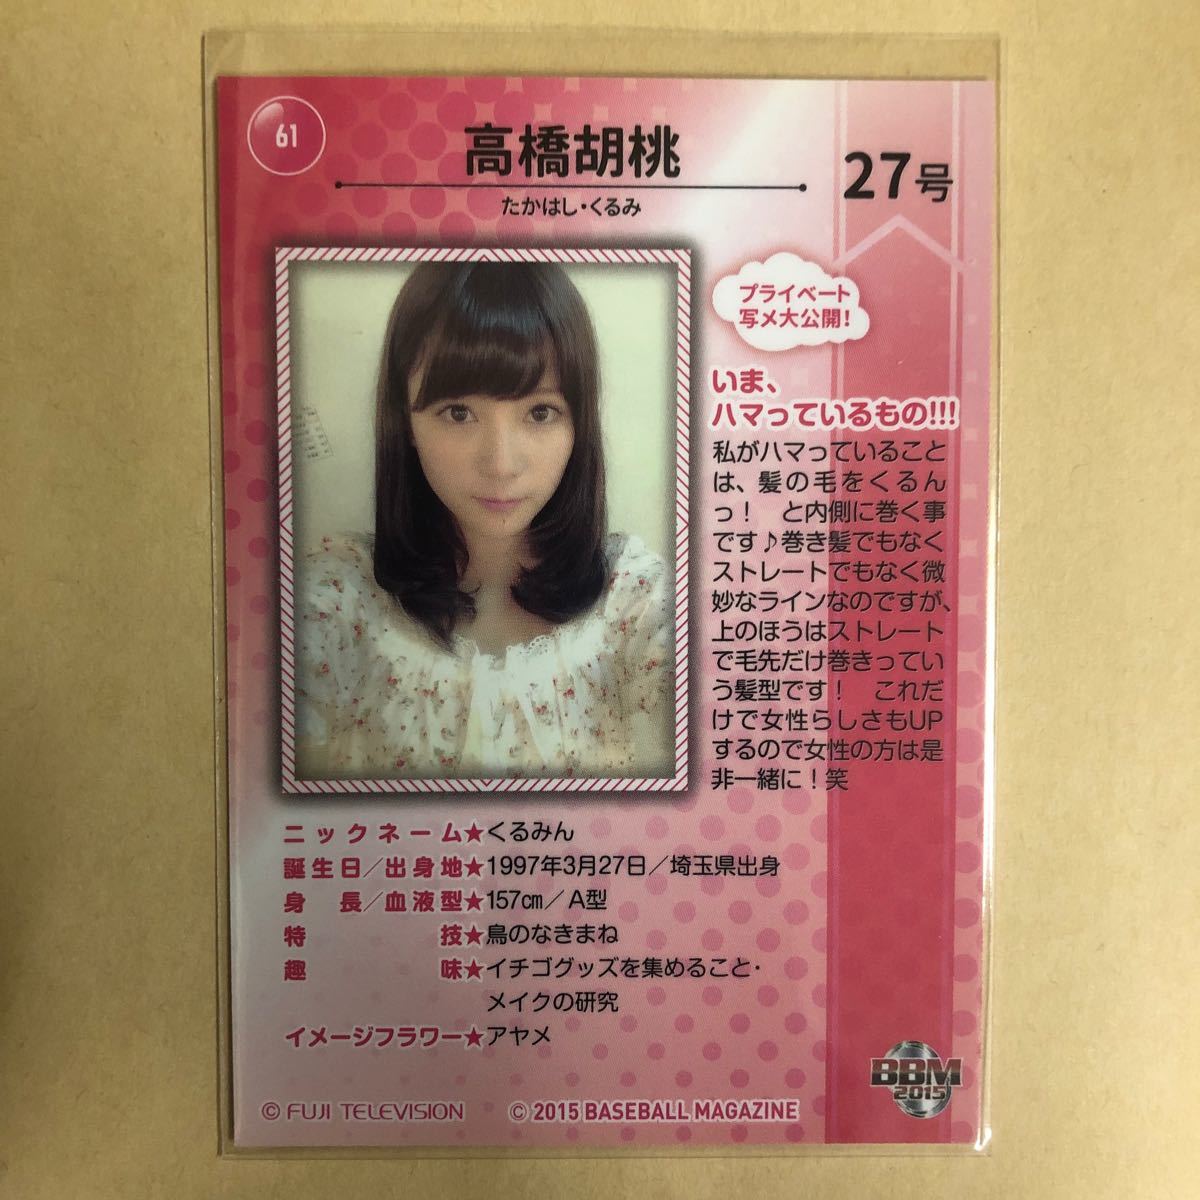 アイドリング!!! 高橋胡桃 2015 BBM トレカ アイドル グラビア カード 61 タレント トレーディングカードの画像2